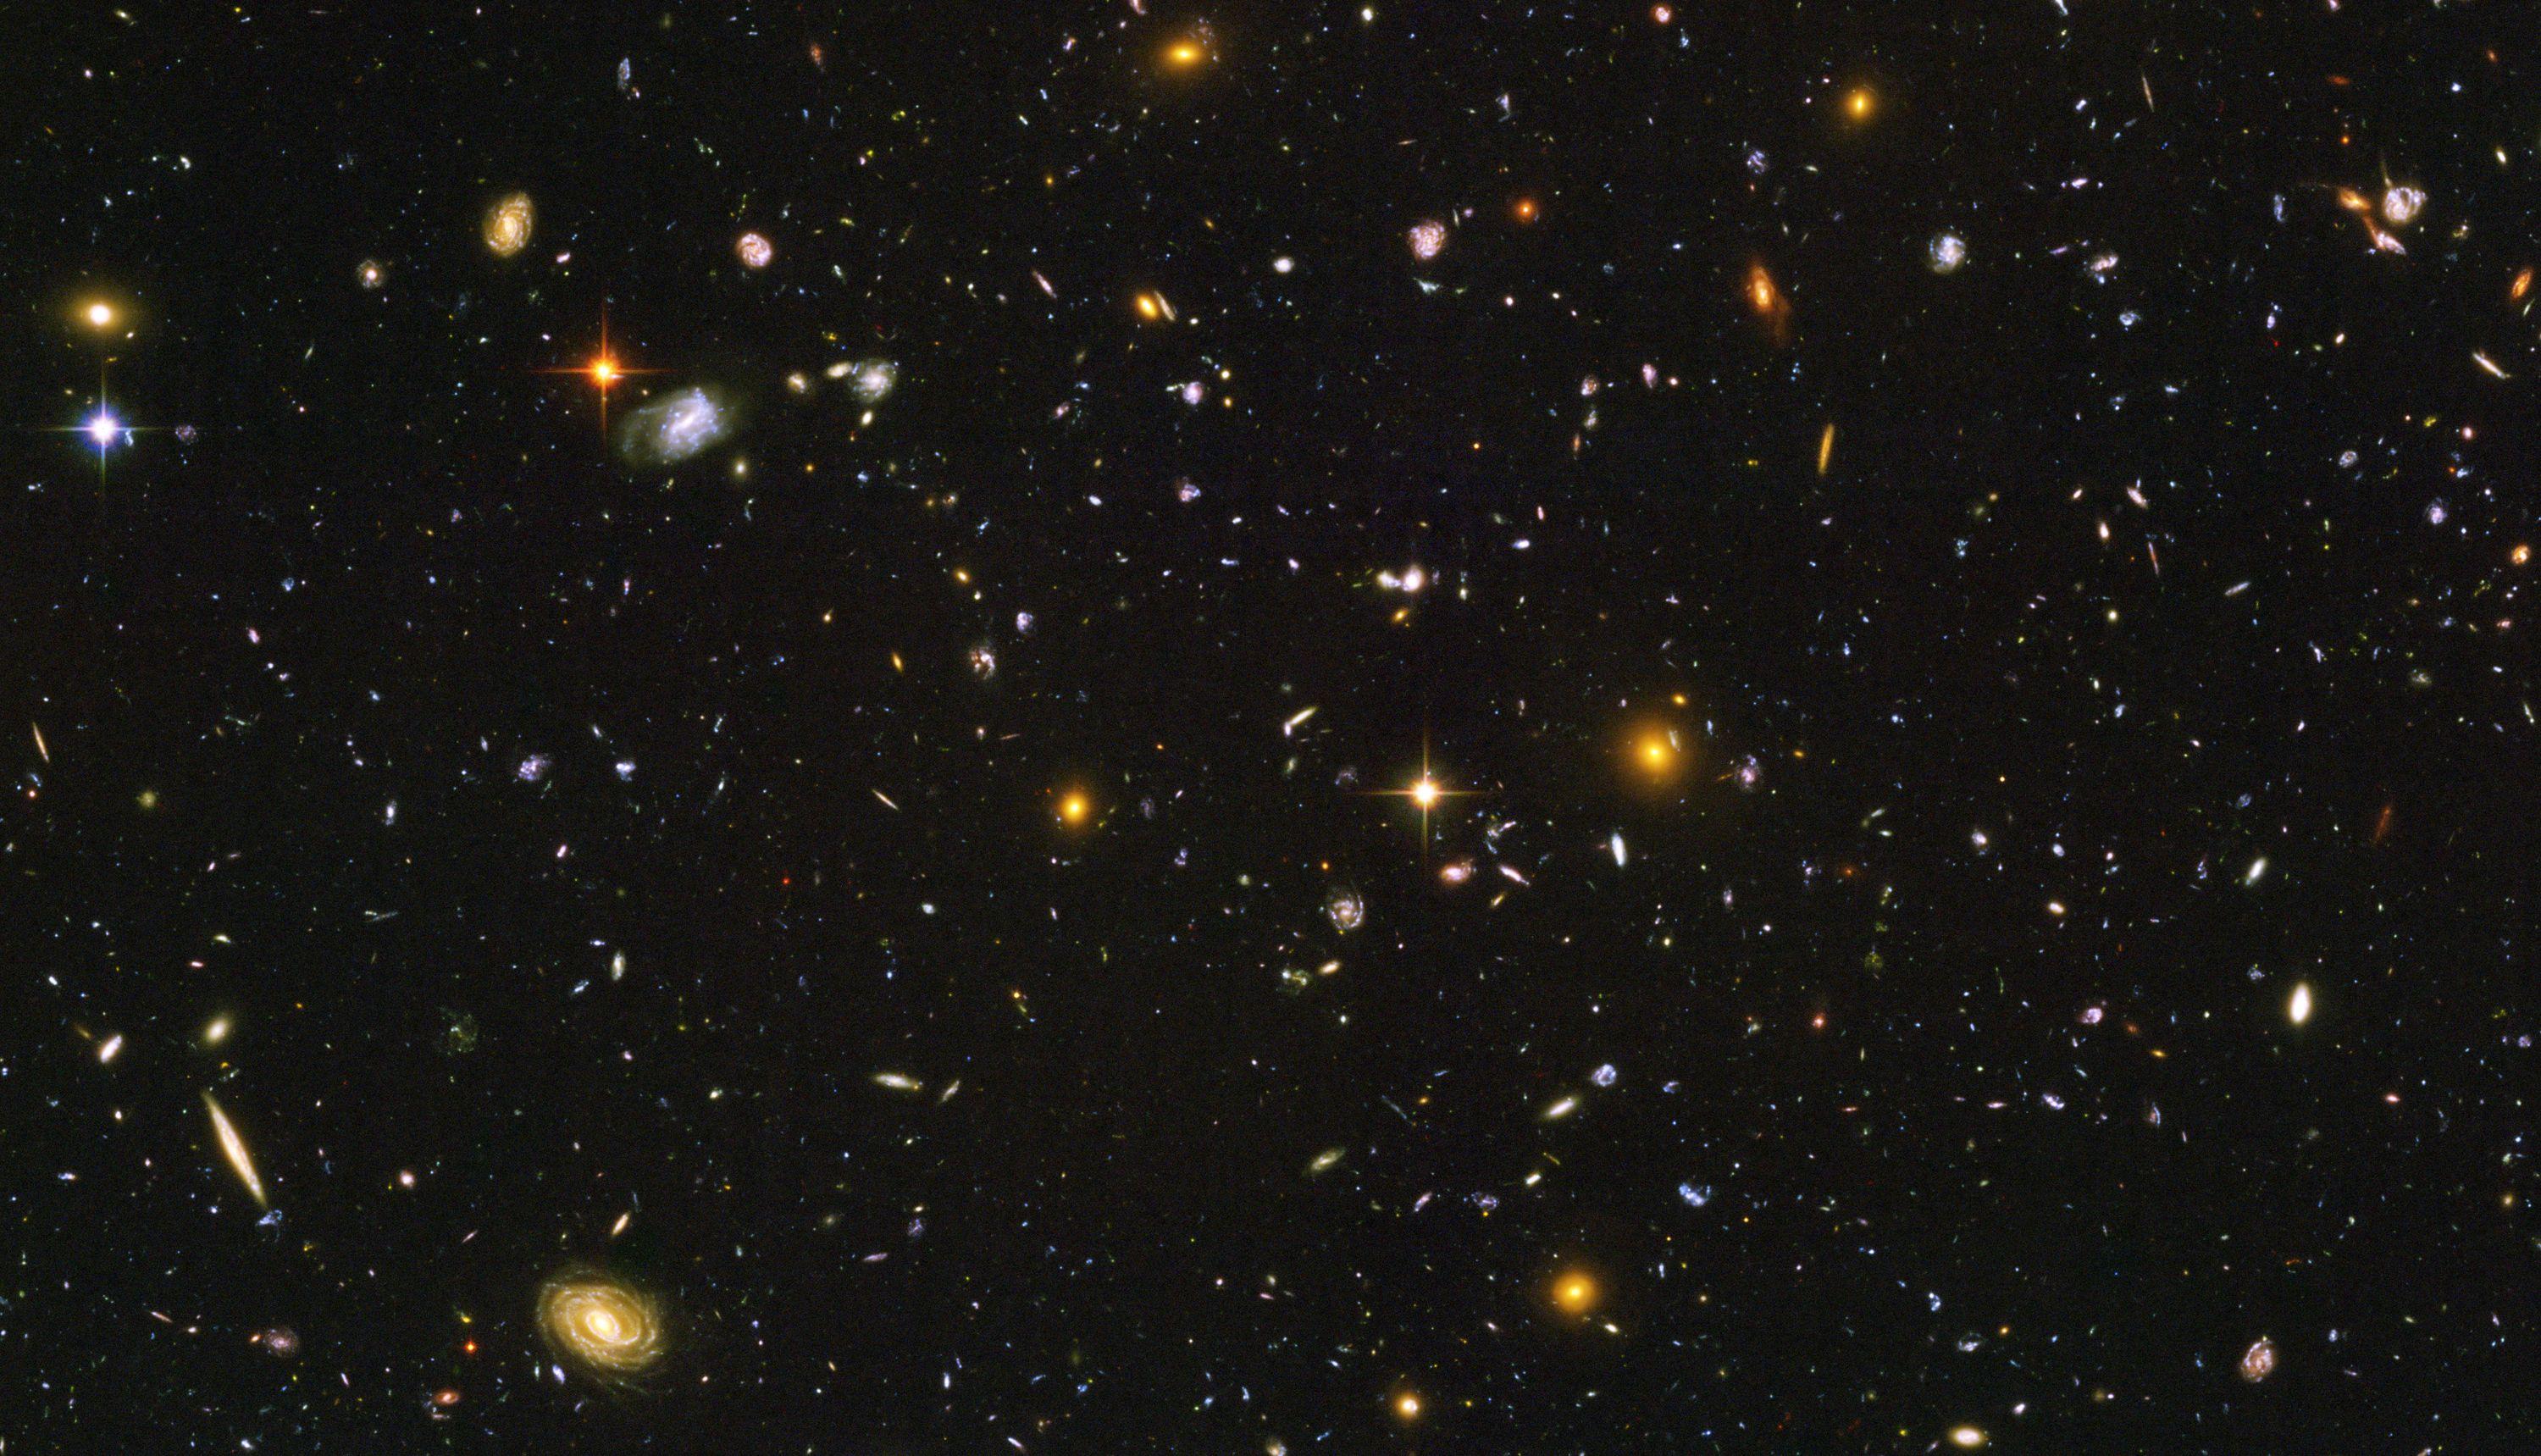 Hubble Ultra Deep Field Wallpapers - Top Free Hubble Ultra Deep Field